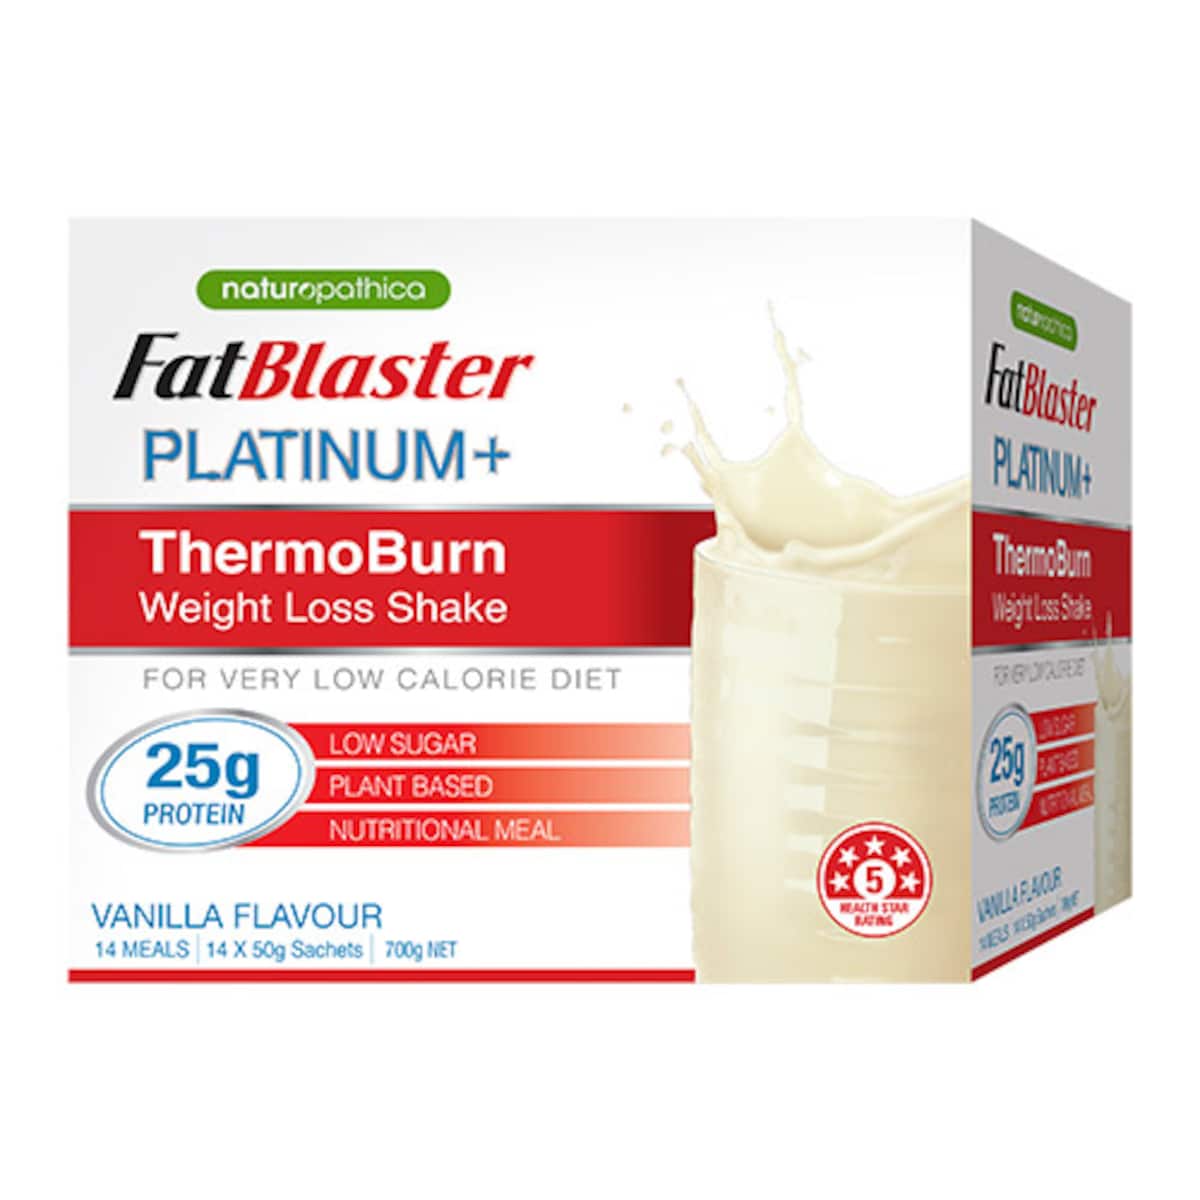 Naturopathica FatBlaster Platinum+ ThermoBurn Weight Loss Shake Vanilla 14 x 50g